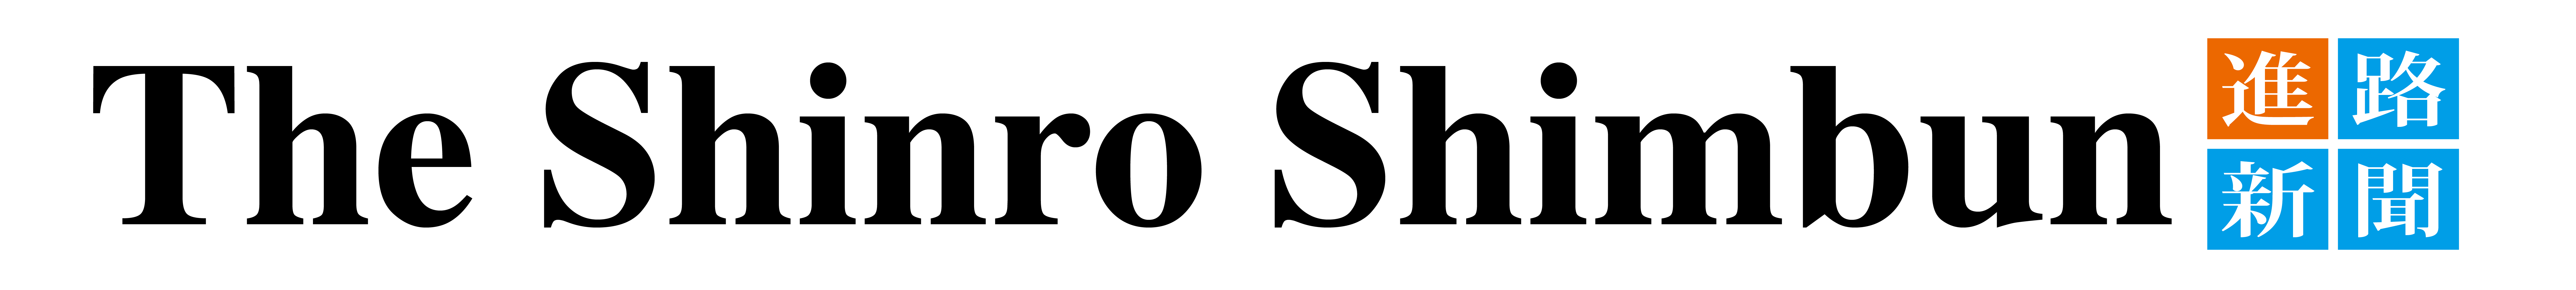 shimbun_logo